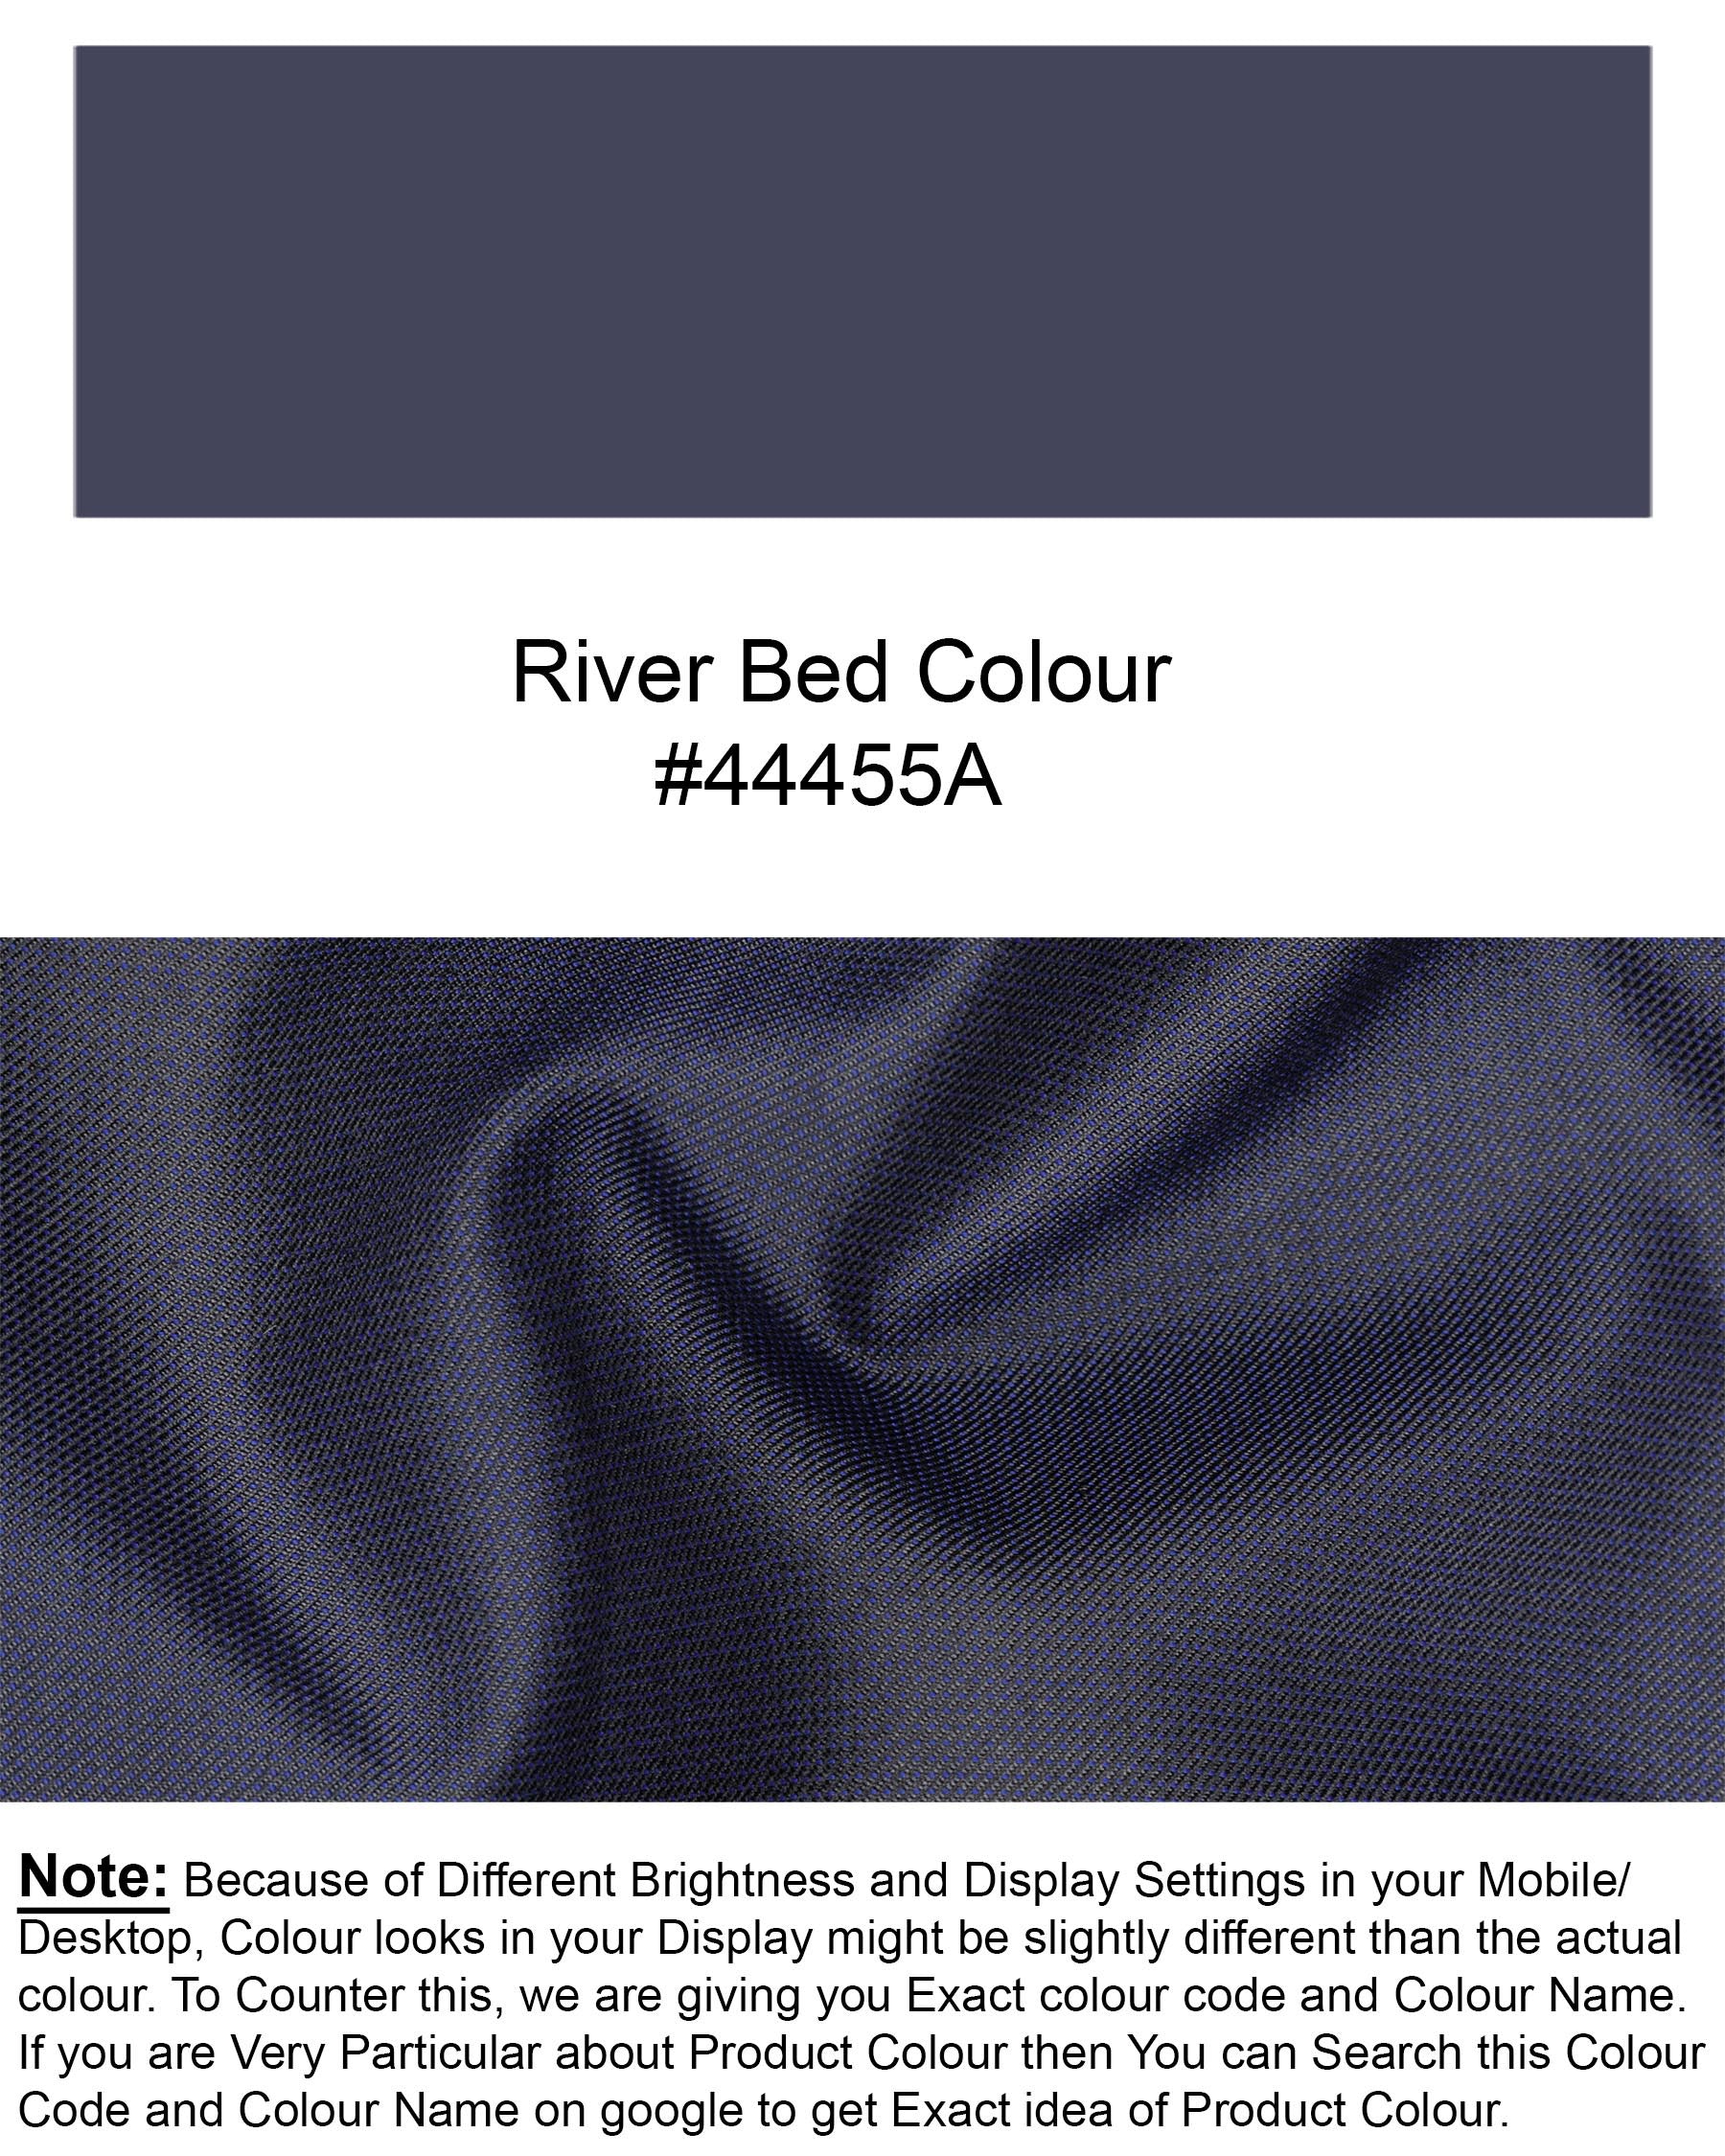 River Bed Blue Textured Waistcoat V1708-36, V1708-38, V1708-40, V1708-42, V1708-44, V1708-46, V1708-48, V1708-50, V1708-52, V1708-54, V1708-56, V1708-58, V1708-60